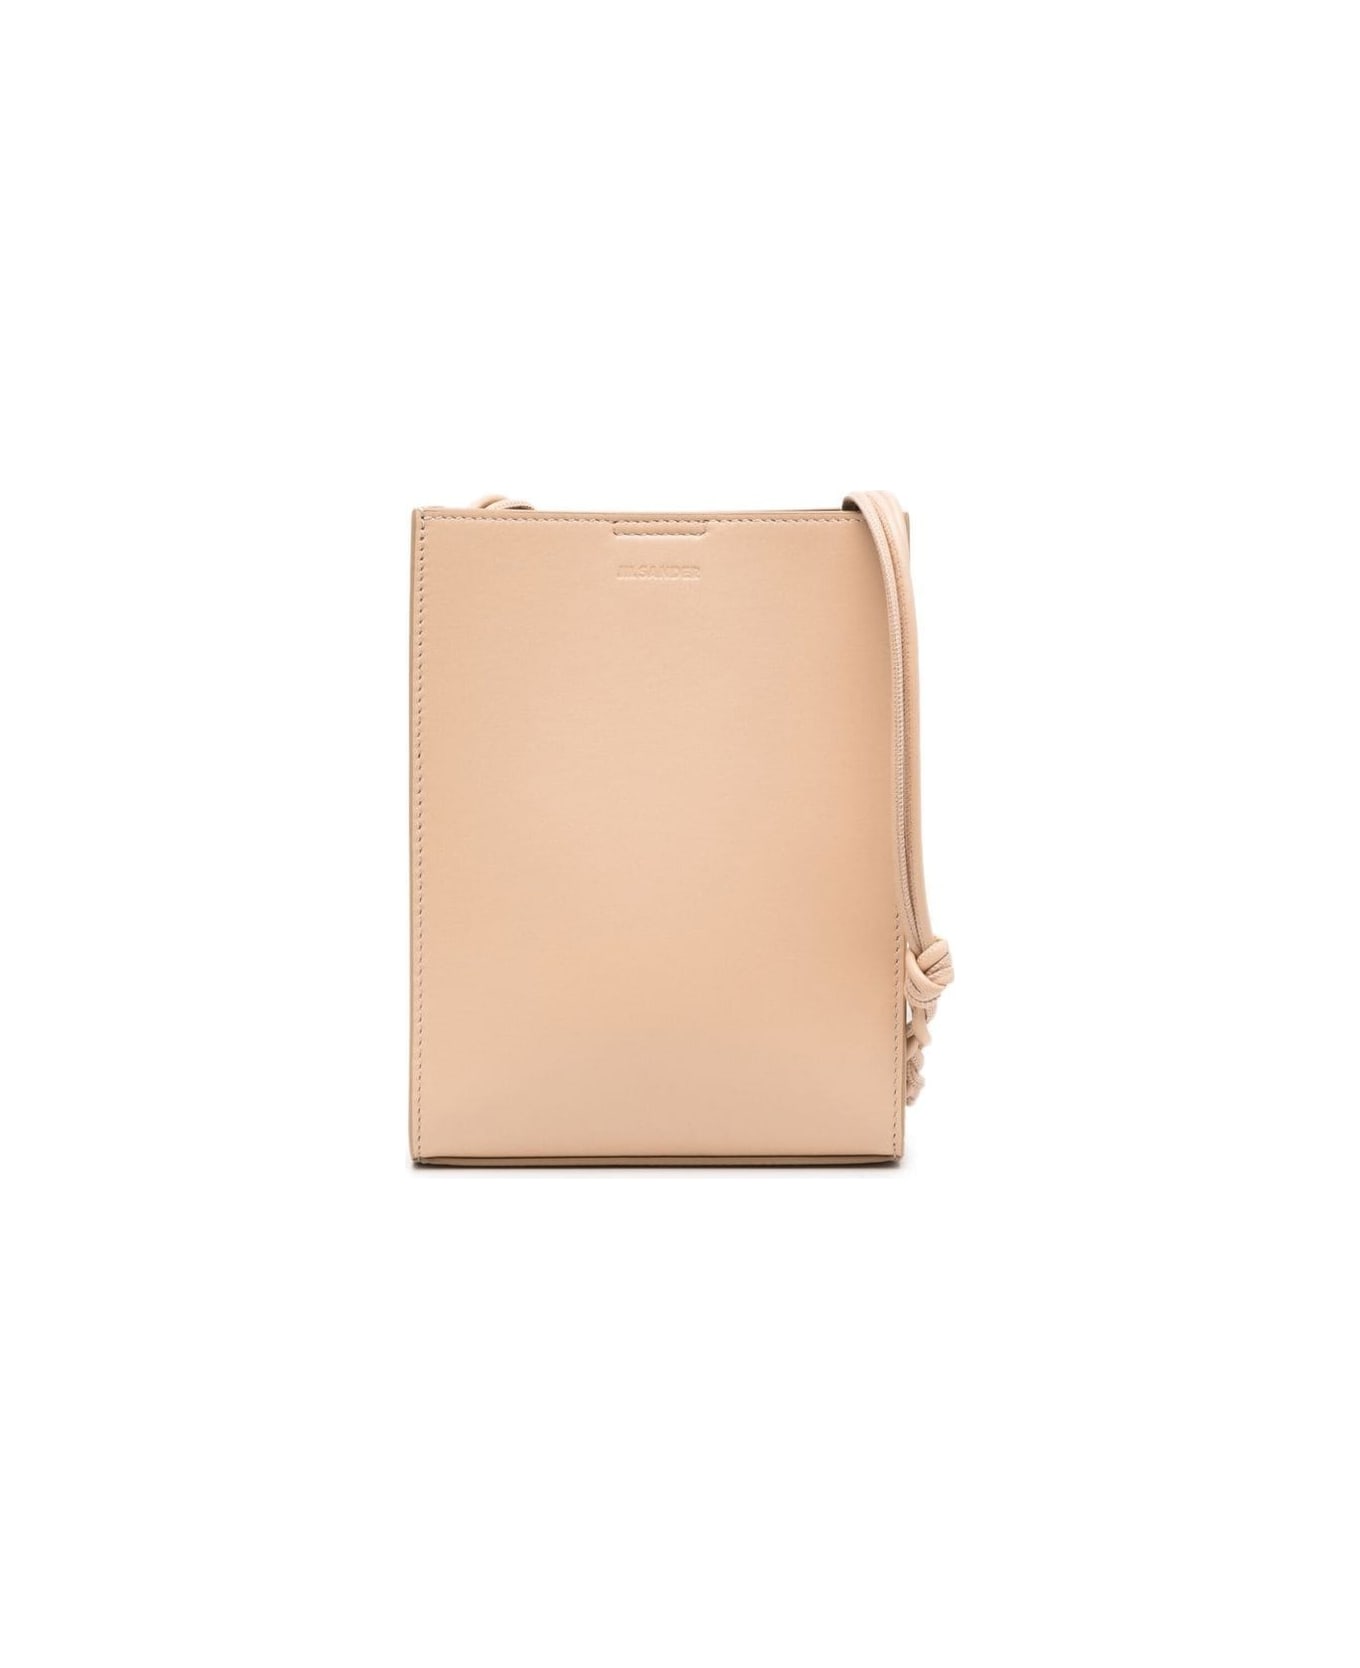 Jil Sander Beige Tangle Bag In Leather Man - Pink